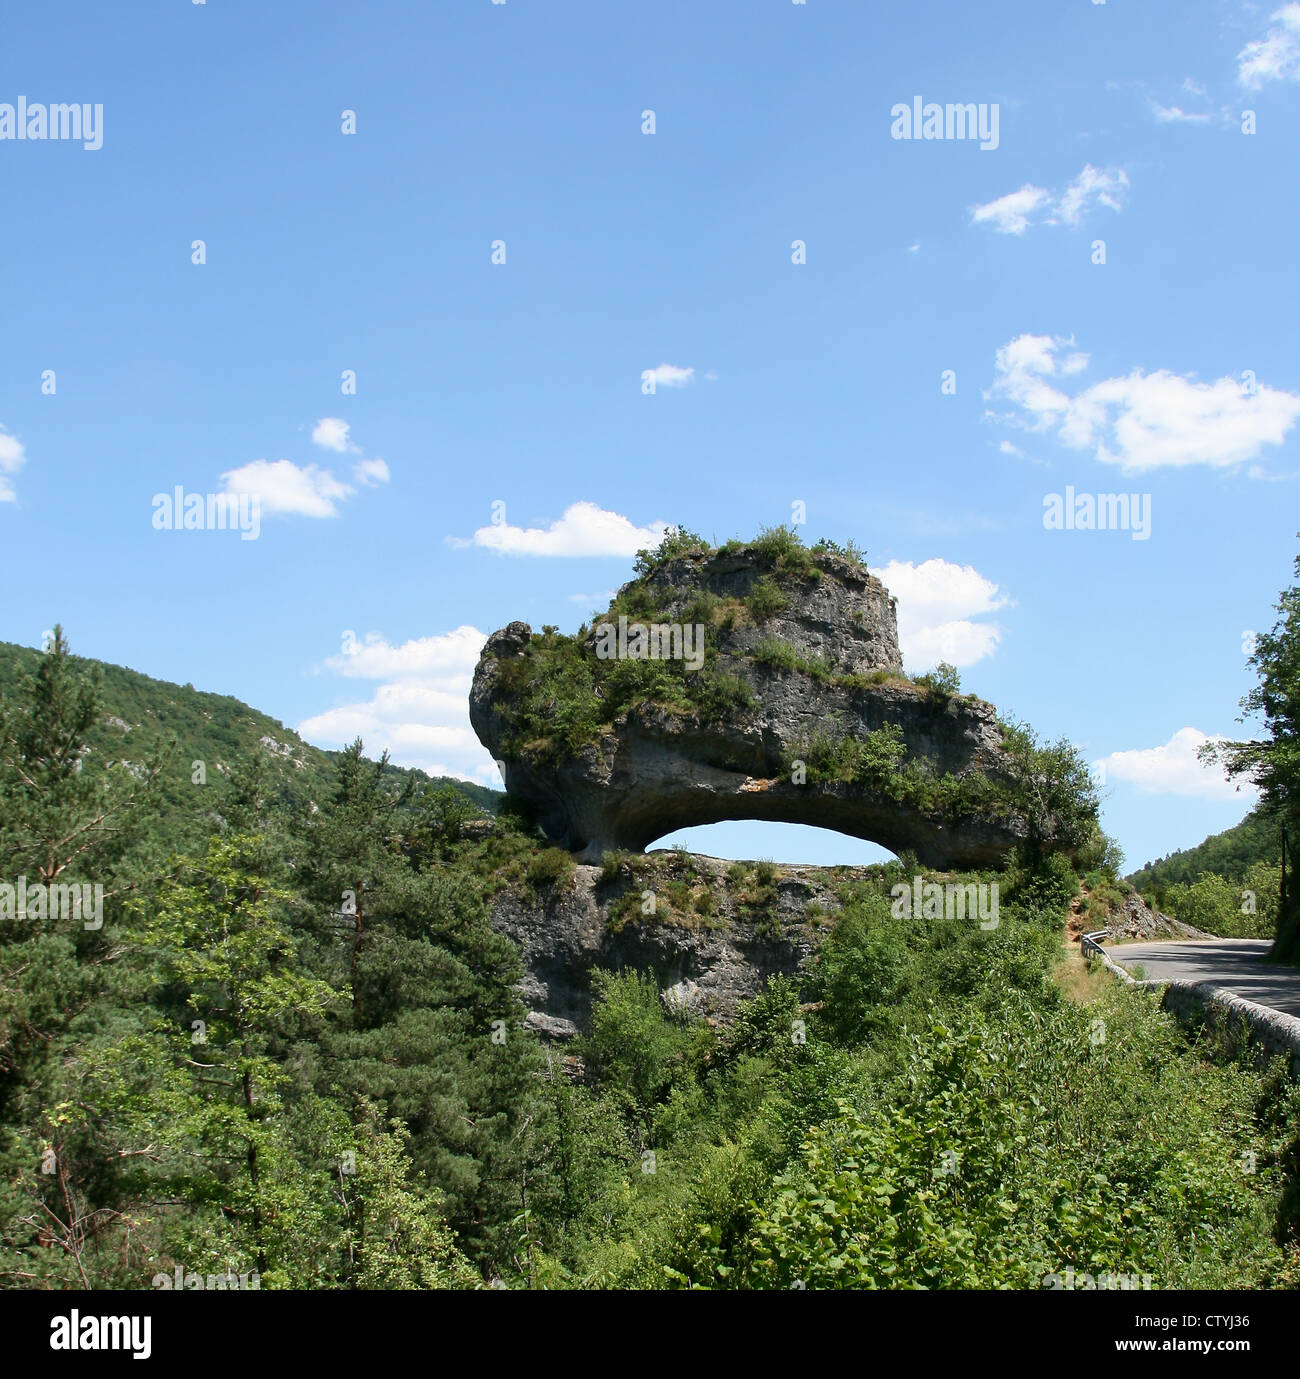 Tourism.Nature.Rock.France.Lozère.Languedoc-Roussillon. Stock Photo